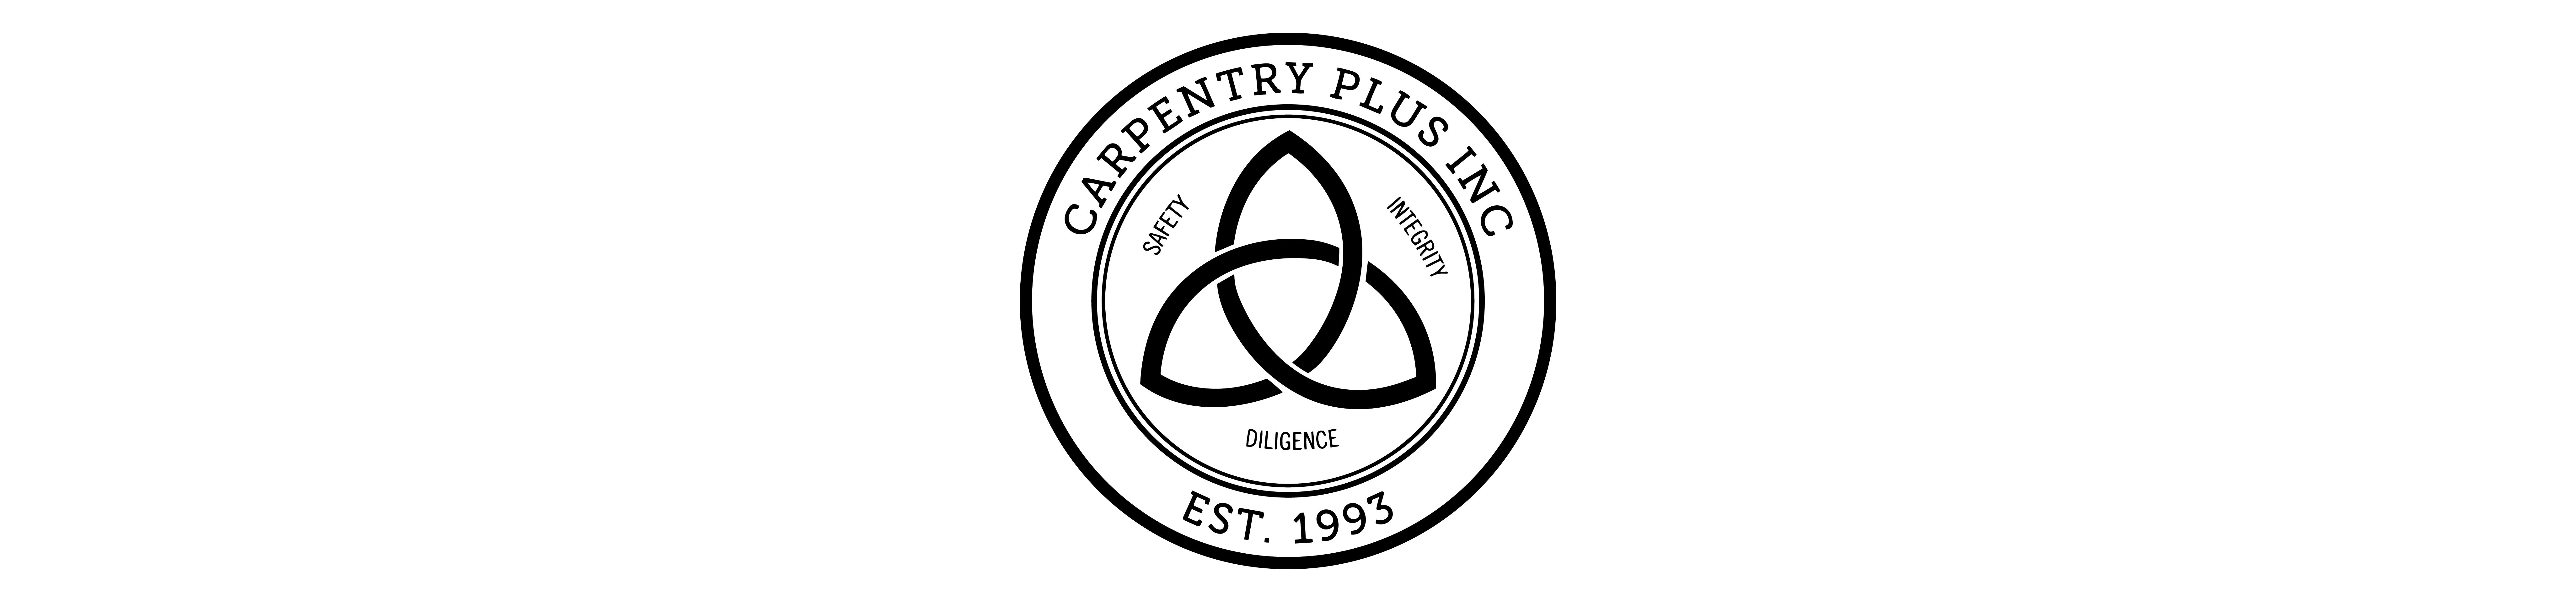 Carpentry Plus